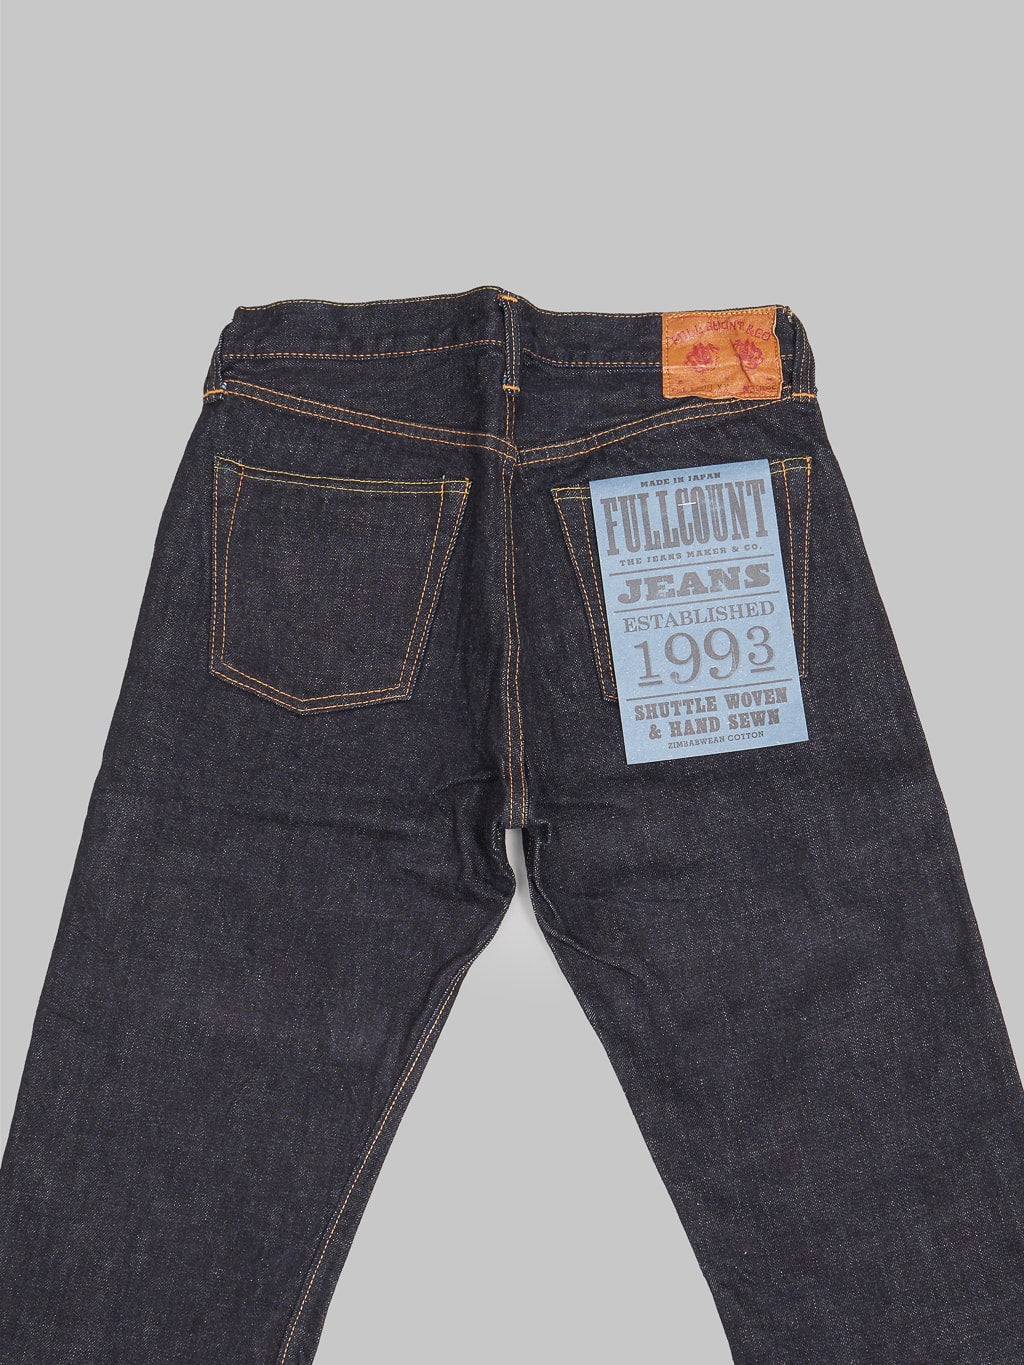 Fullcount 1108XXW Slim Straight Jeans back details